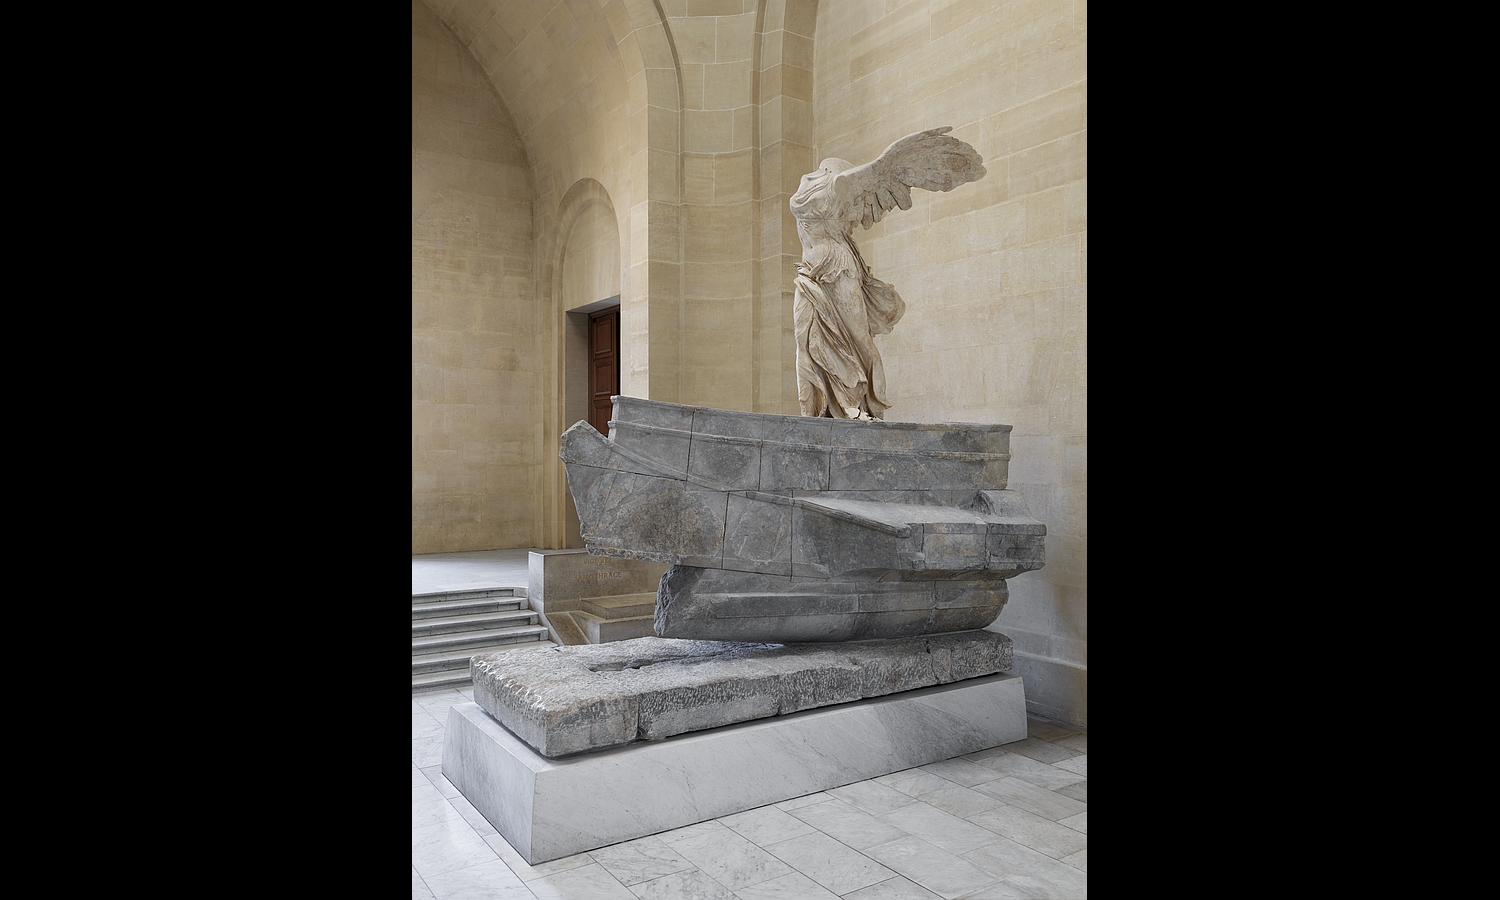 Τhe Nike of Samothrace in the Louvre Museum